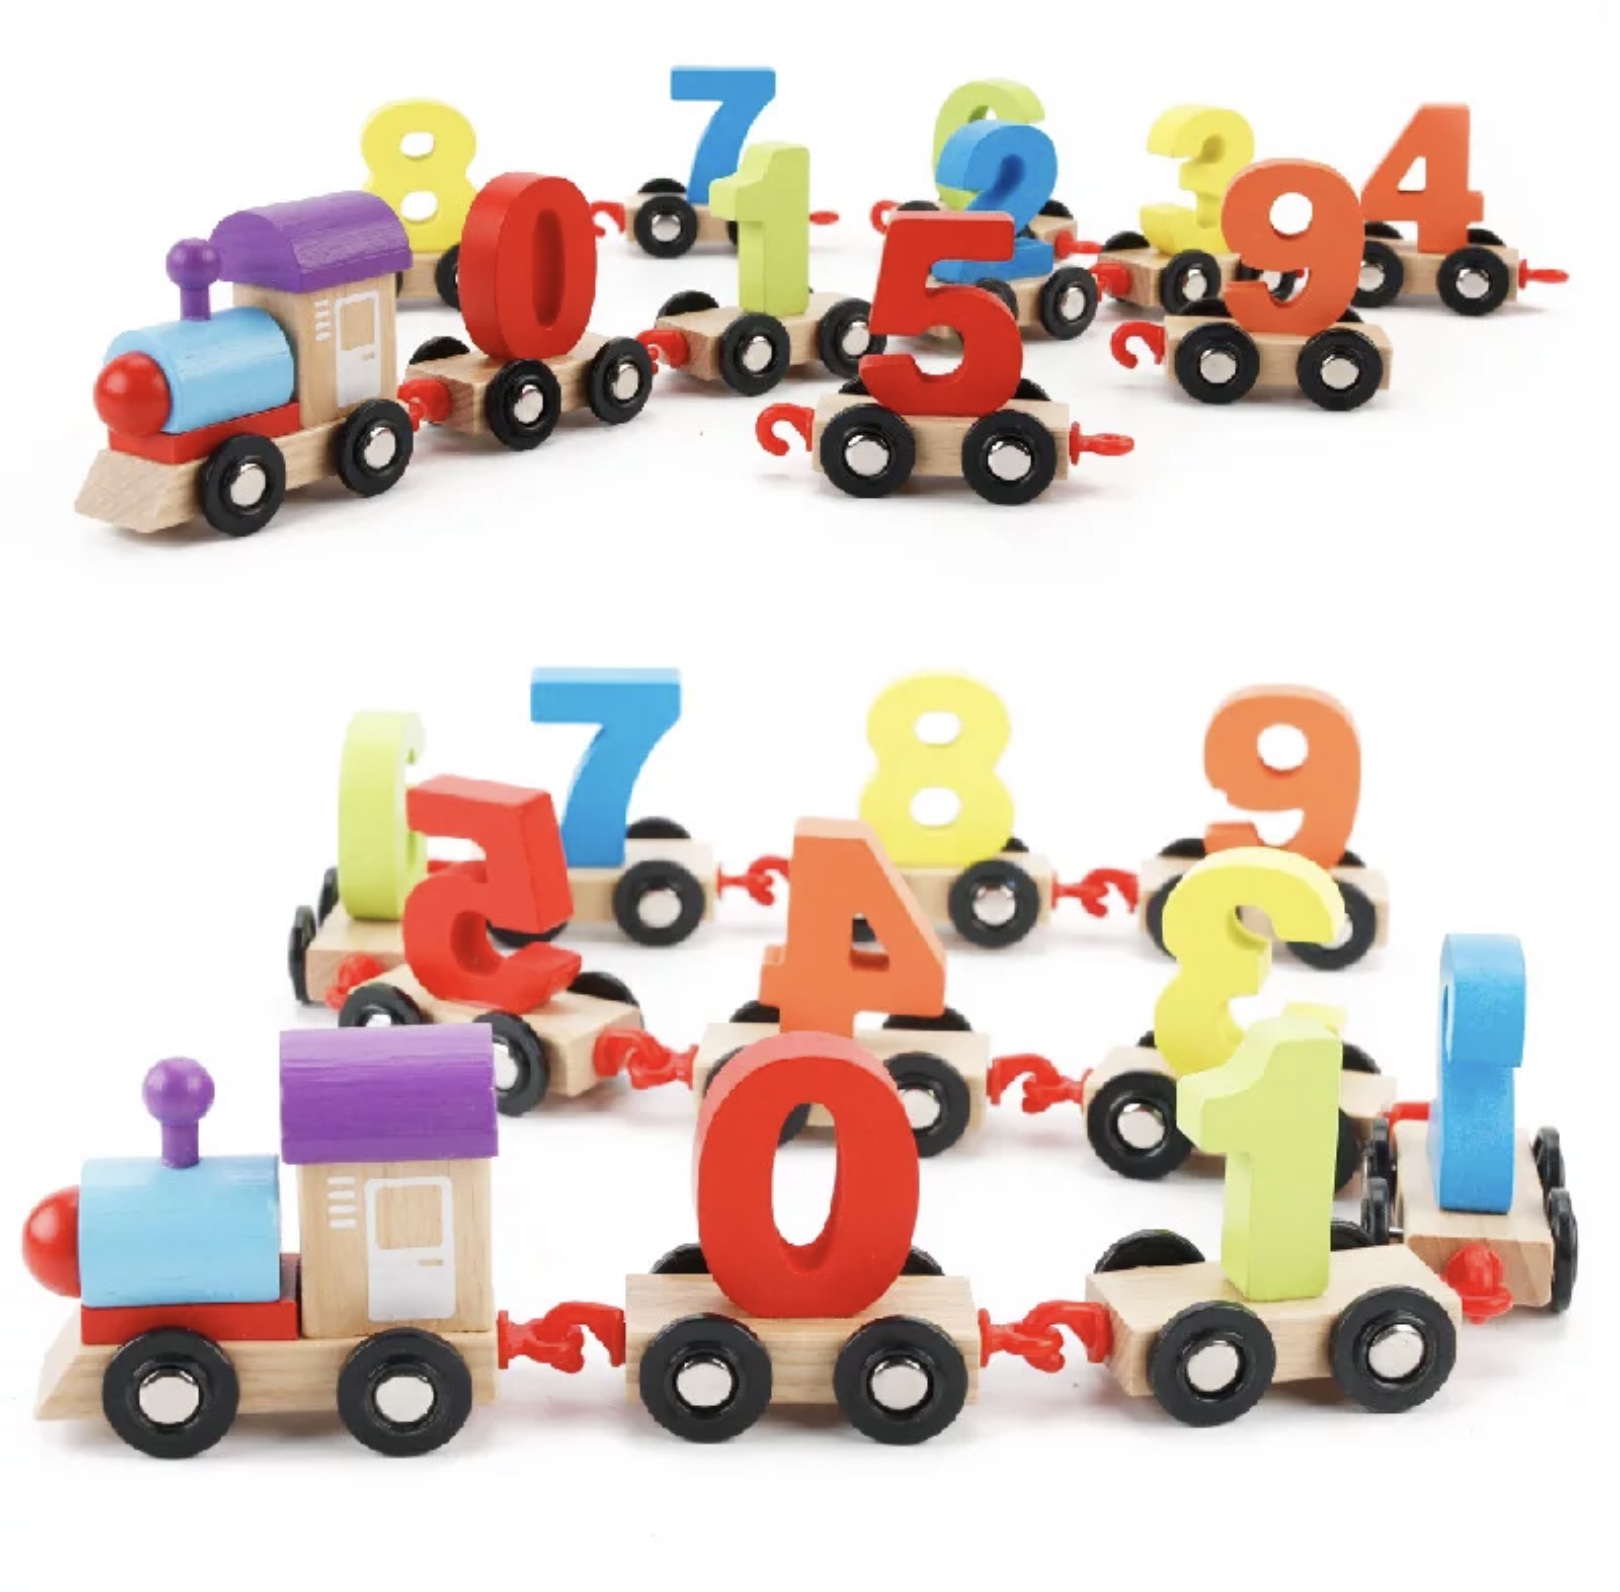 Tren din lemn cu numere frumos colorate pentru copii educativ de varsta 3ani